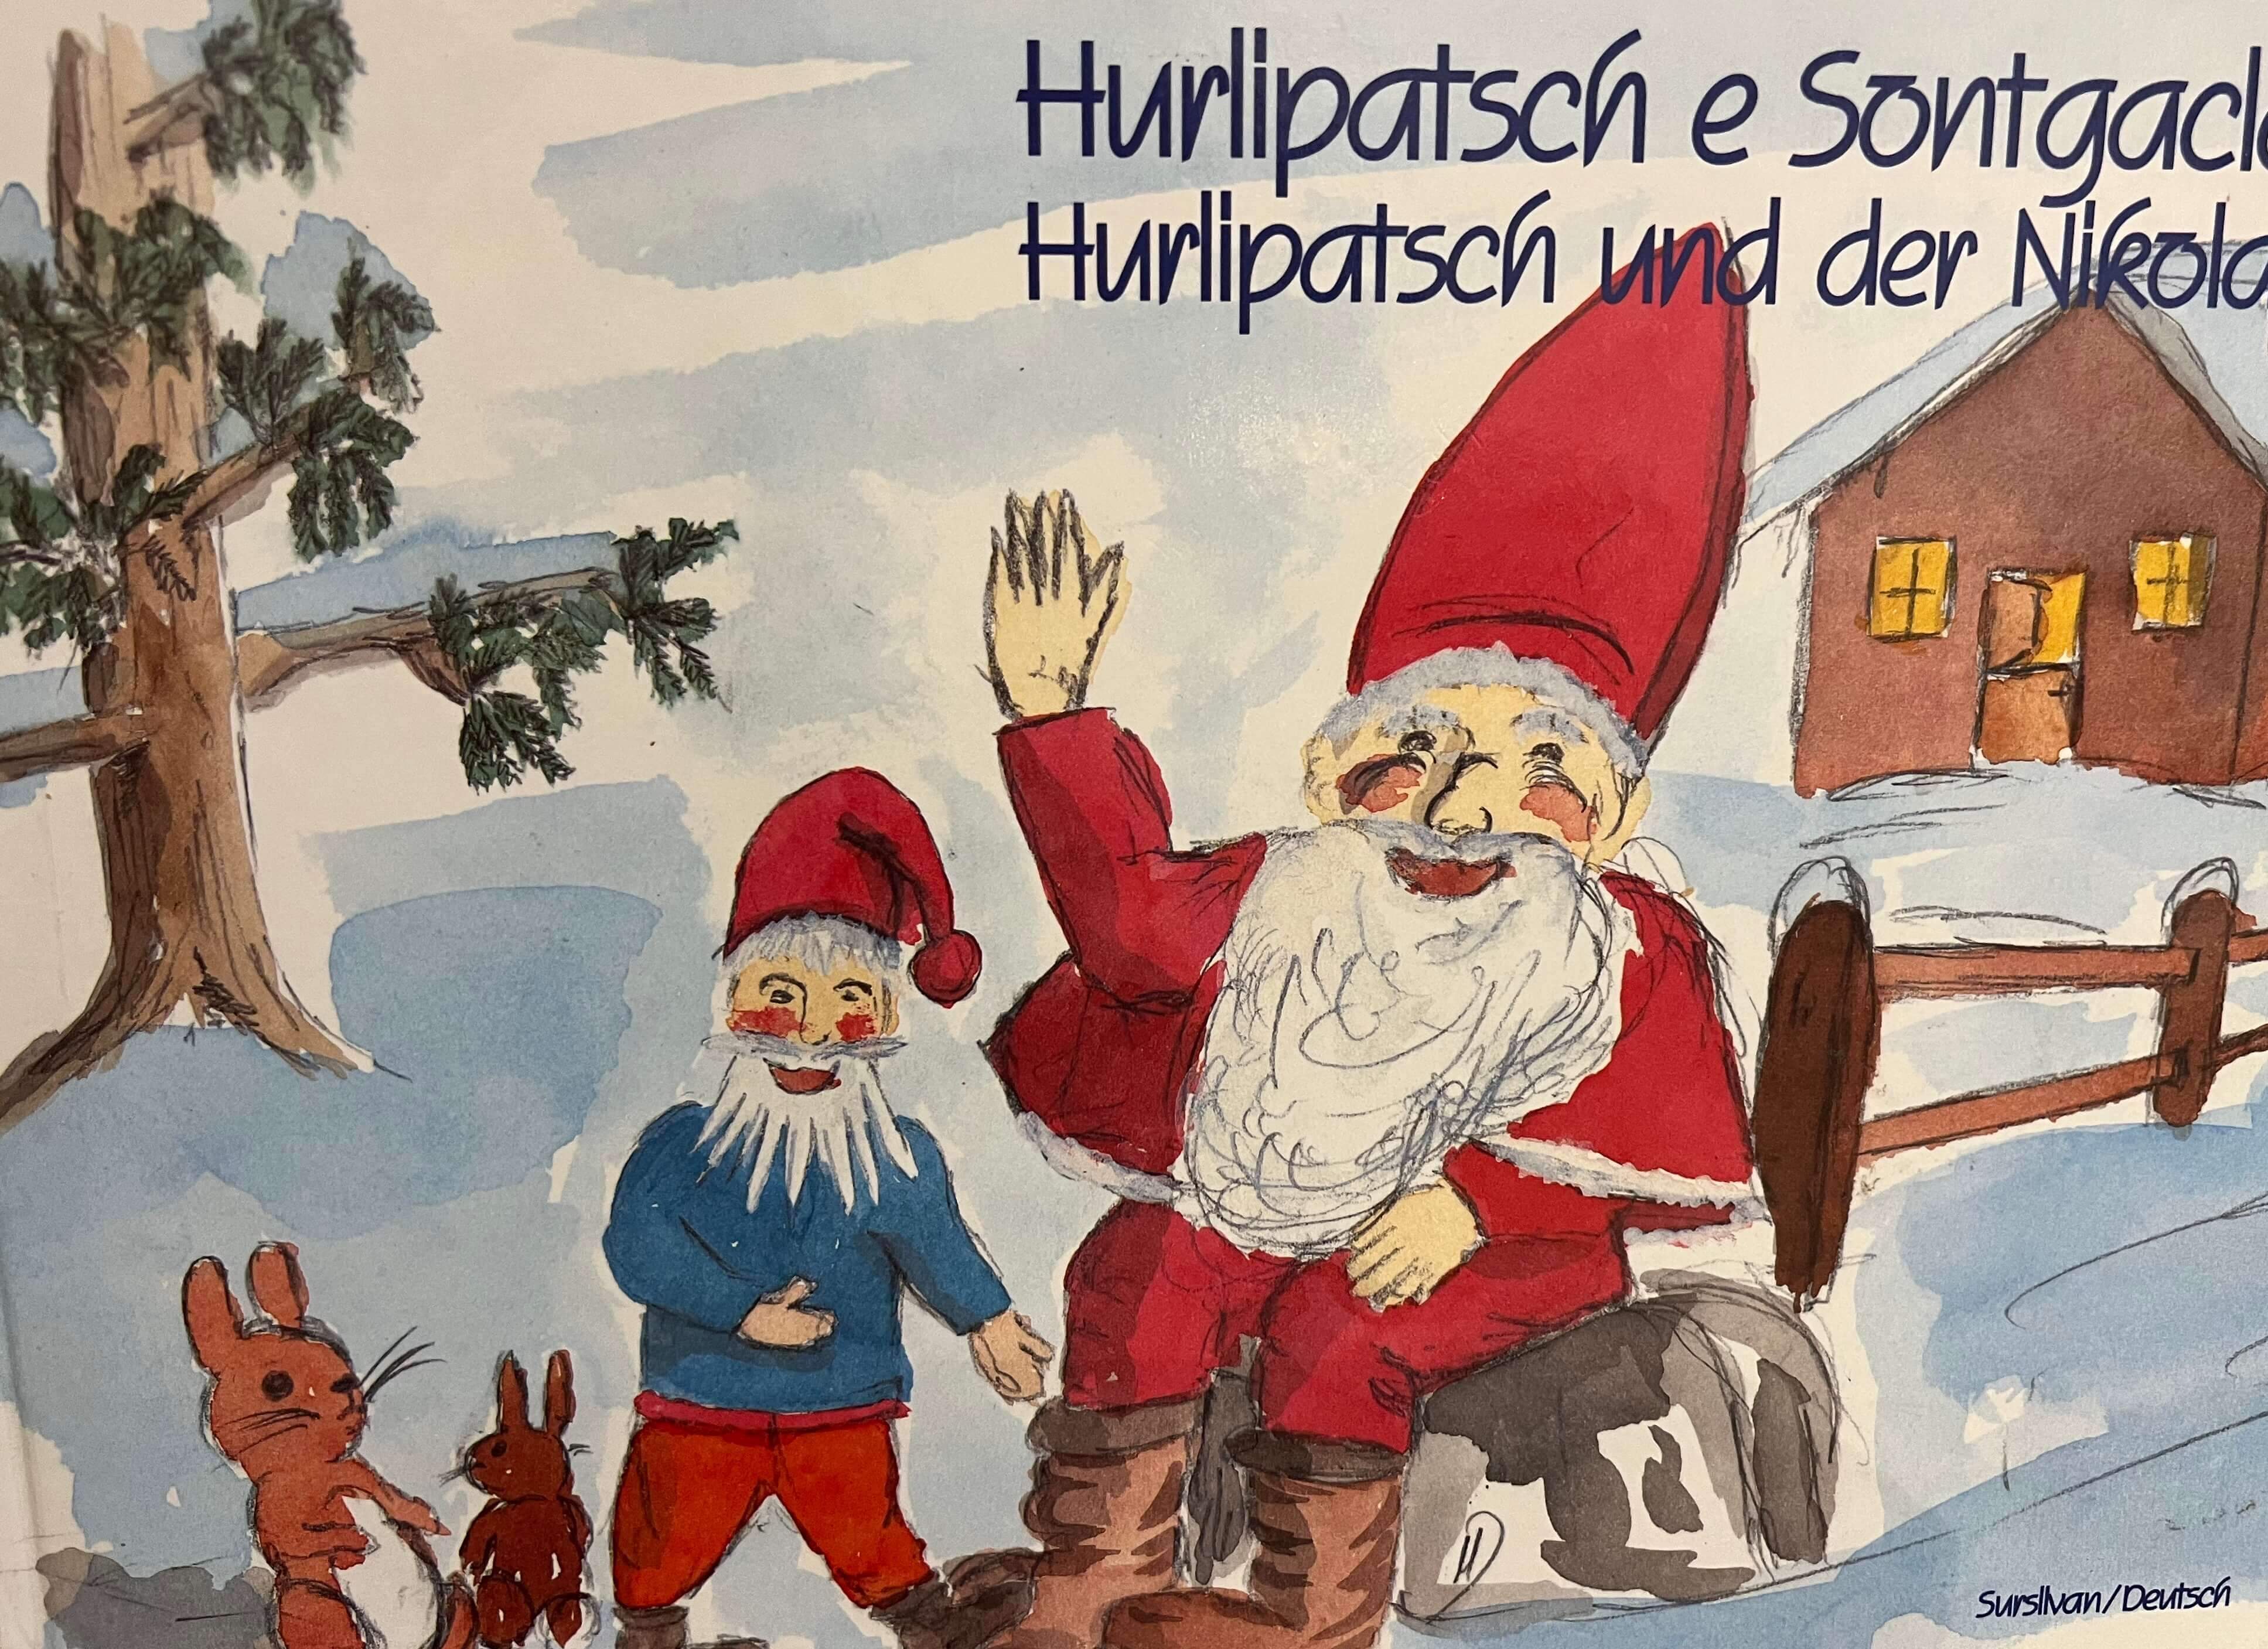 Hurlipatsch e Sontgaclau - Hurlipatsch und der Nikolaus